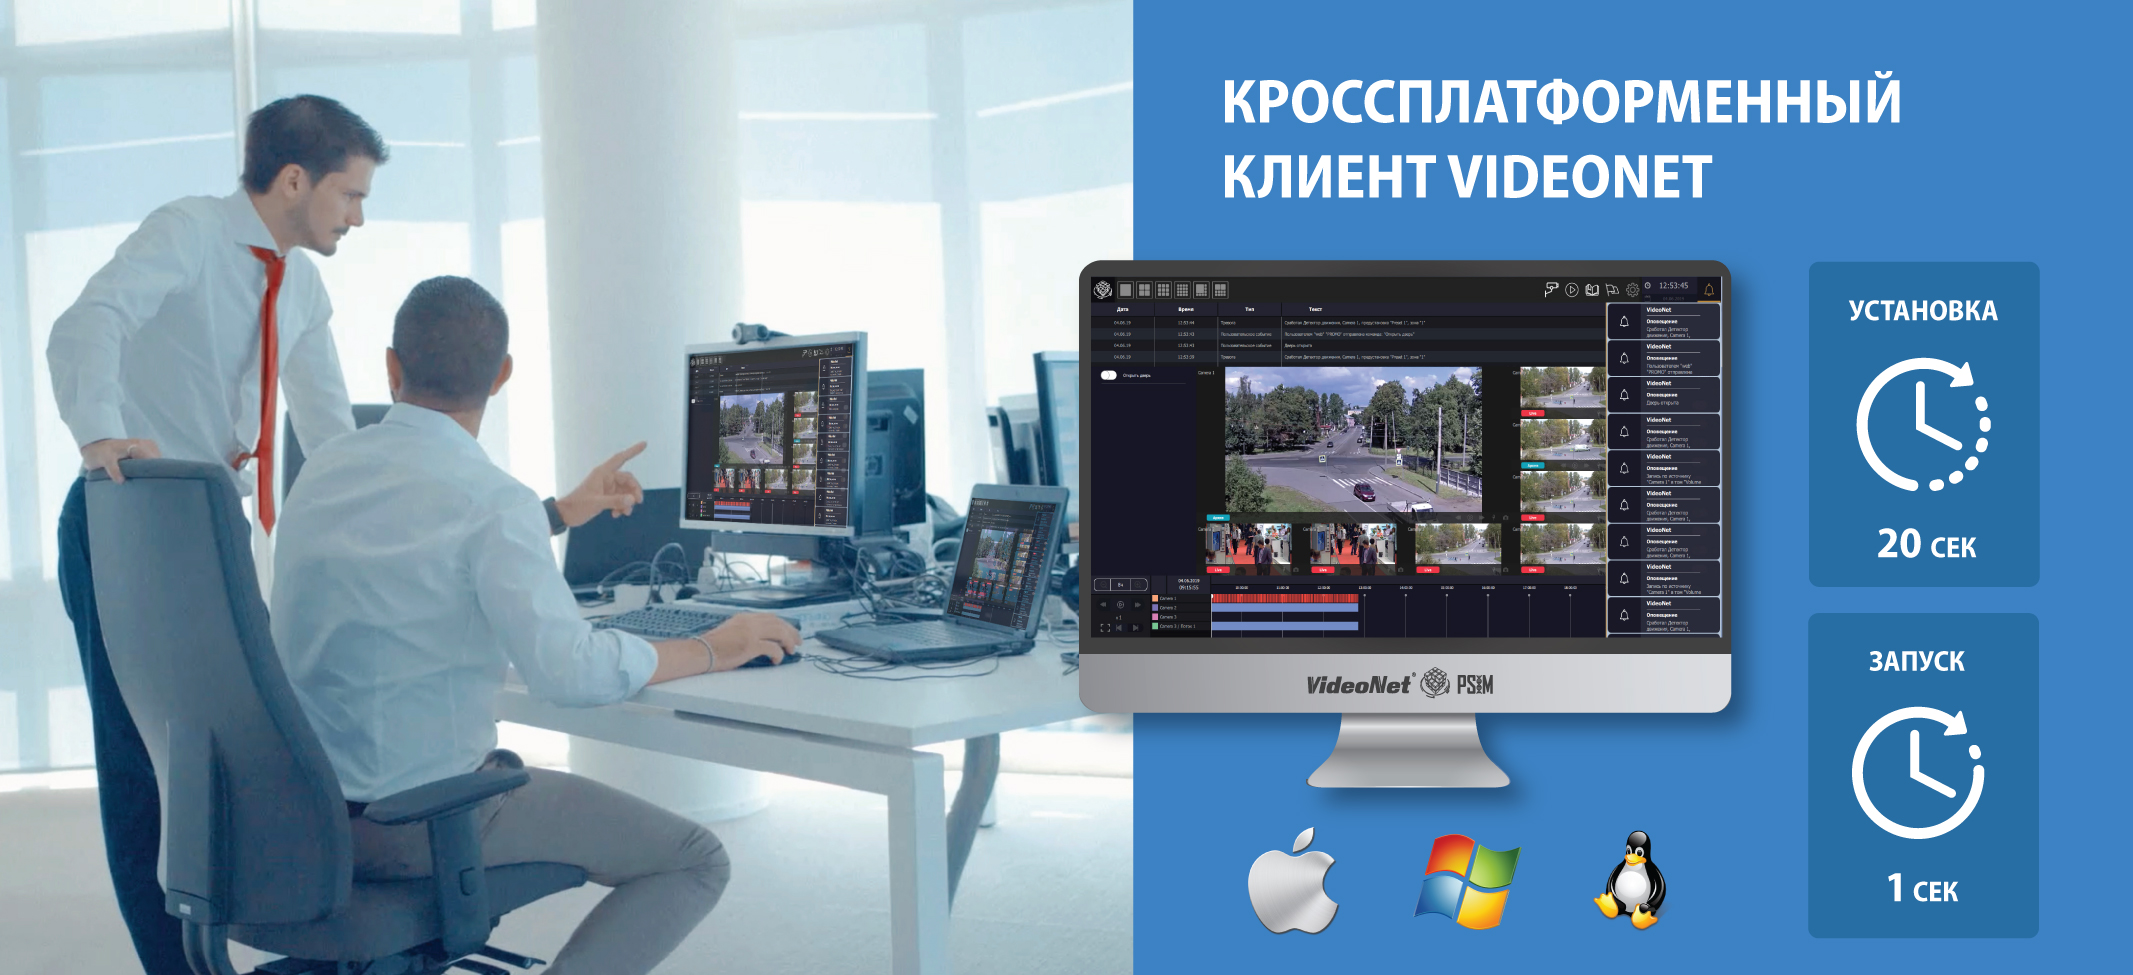 Video client